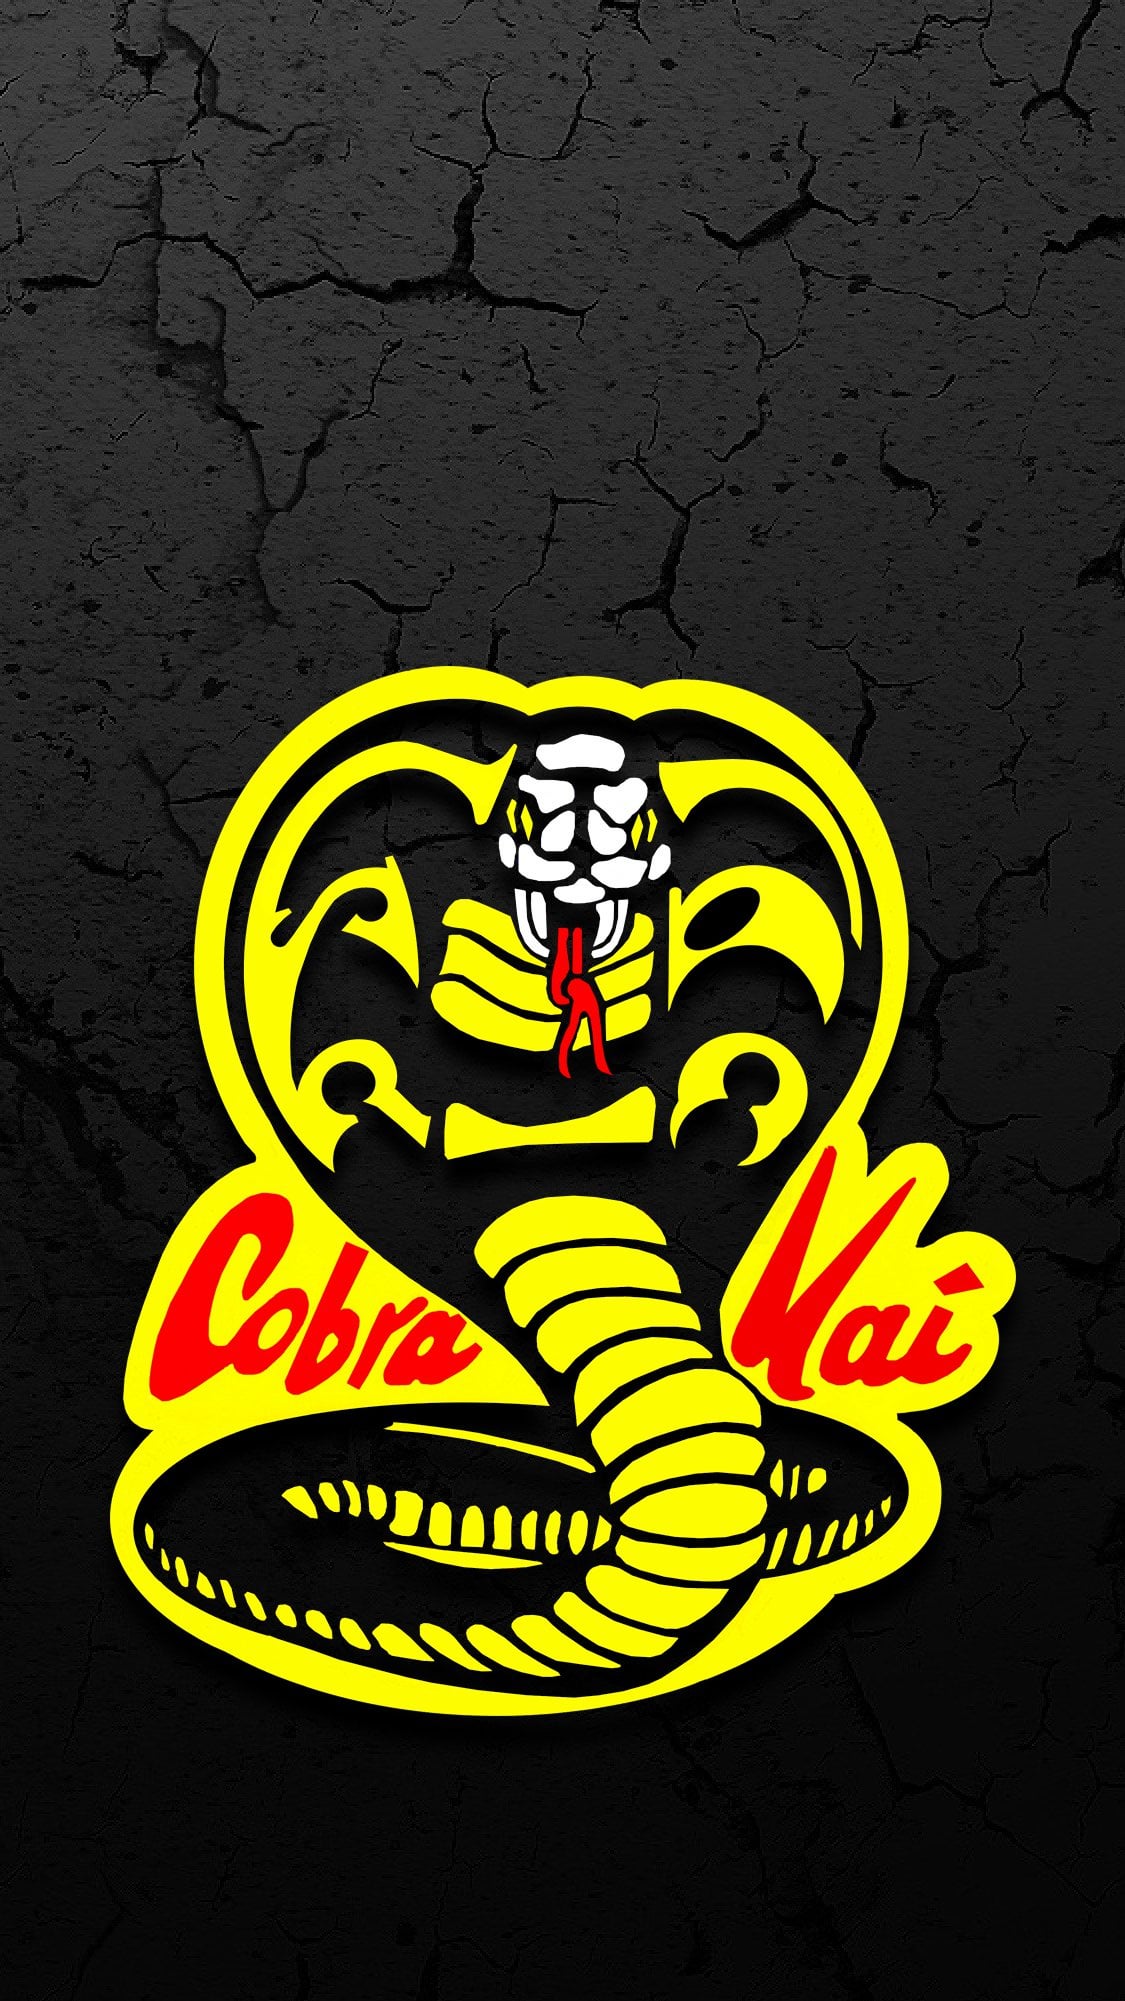 A Couple Of Cobra Kai Phone Wallpaper I Made Quickly Enjoy R